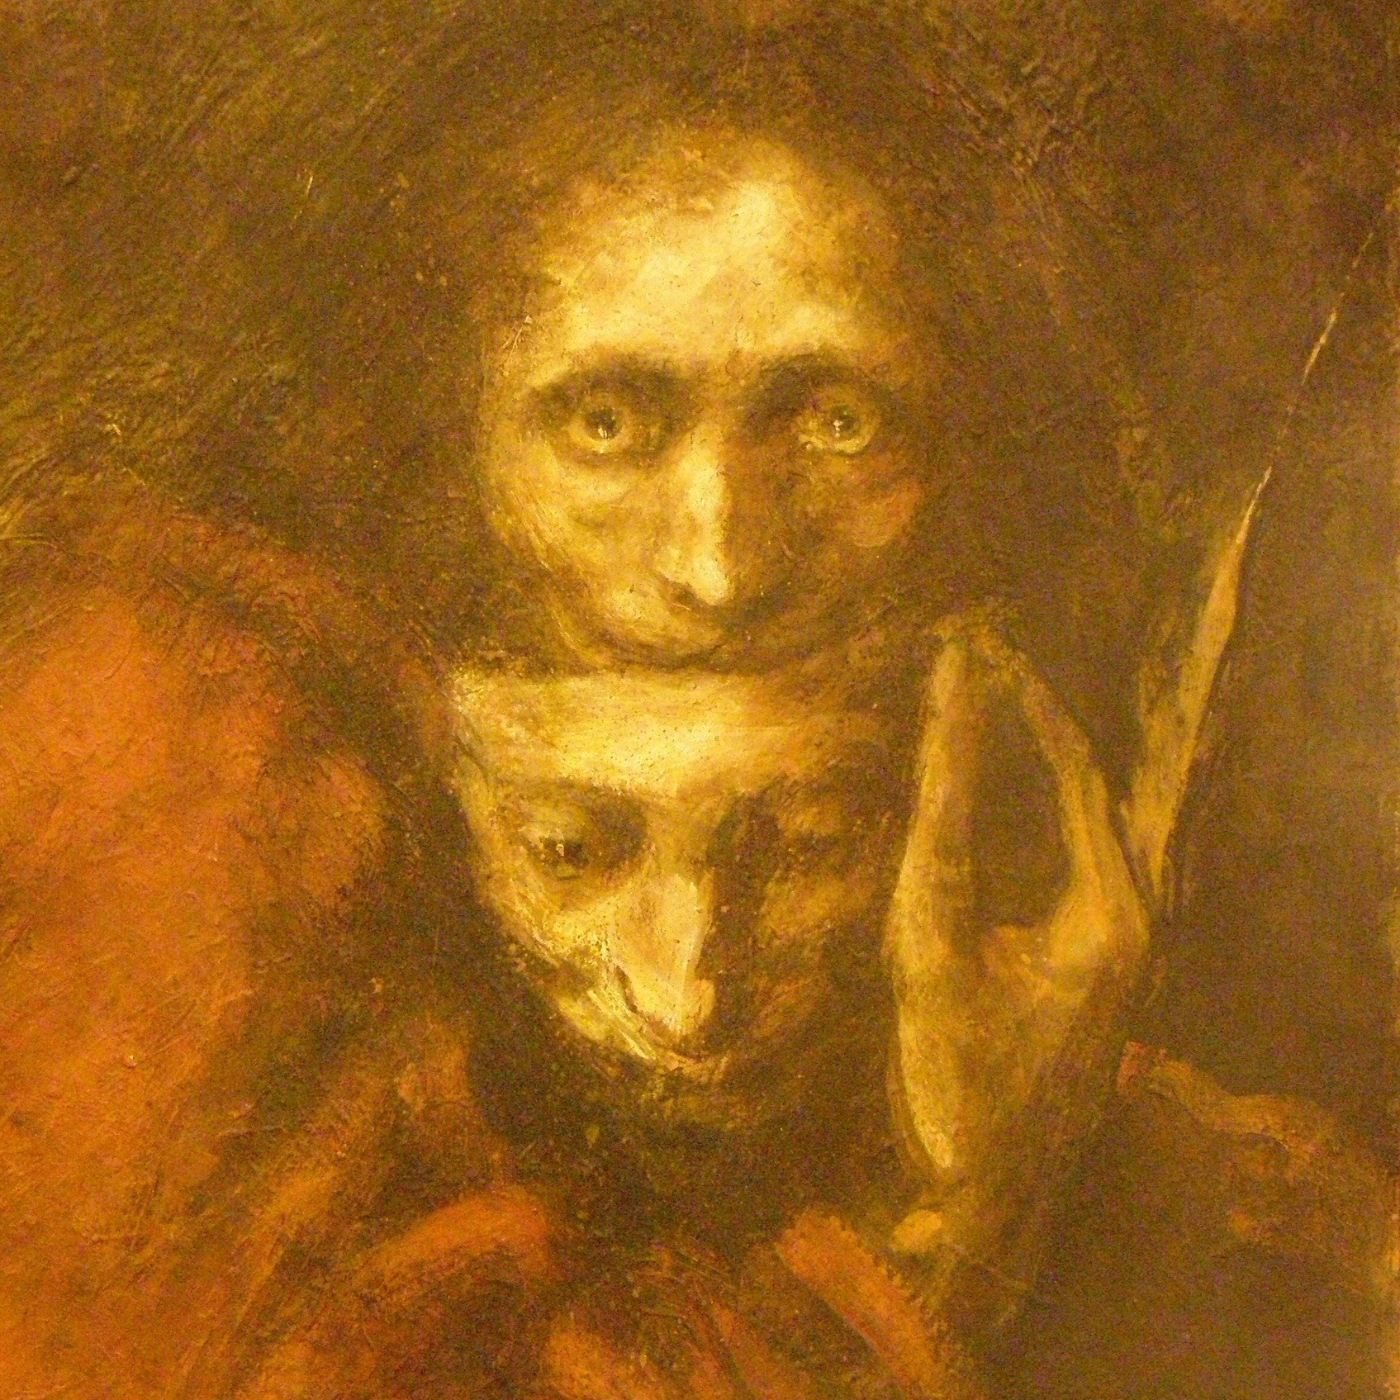 ”El Fantasma”, de Enrique Anderson Imbert